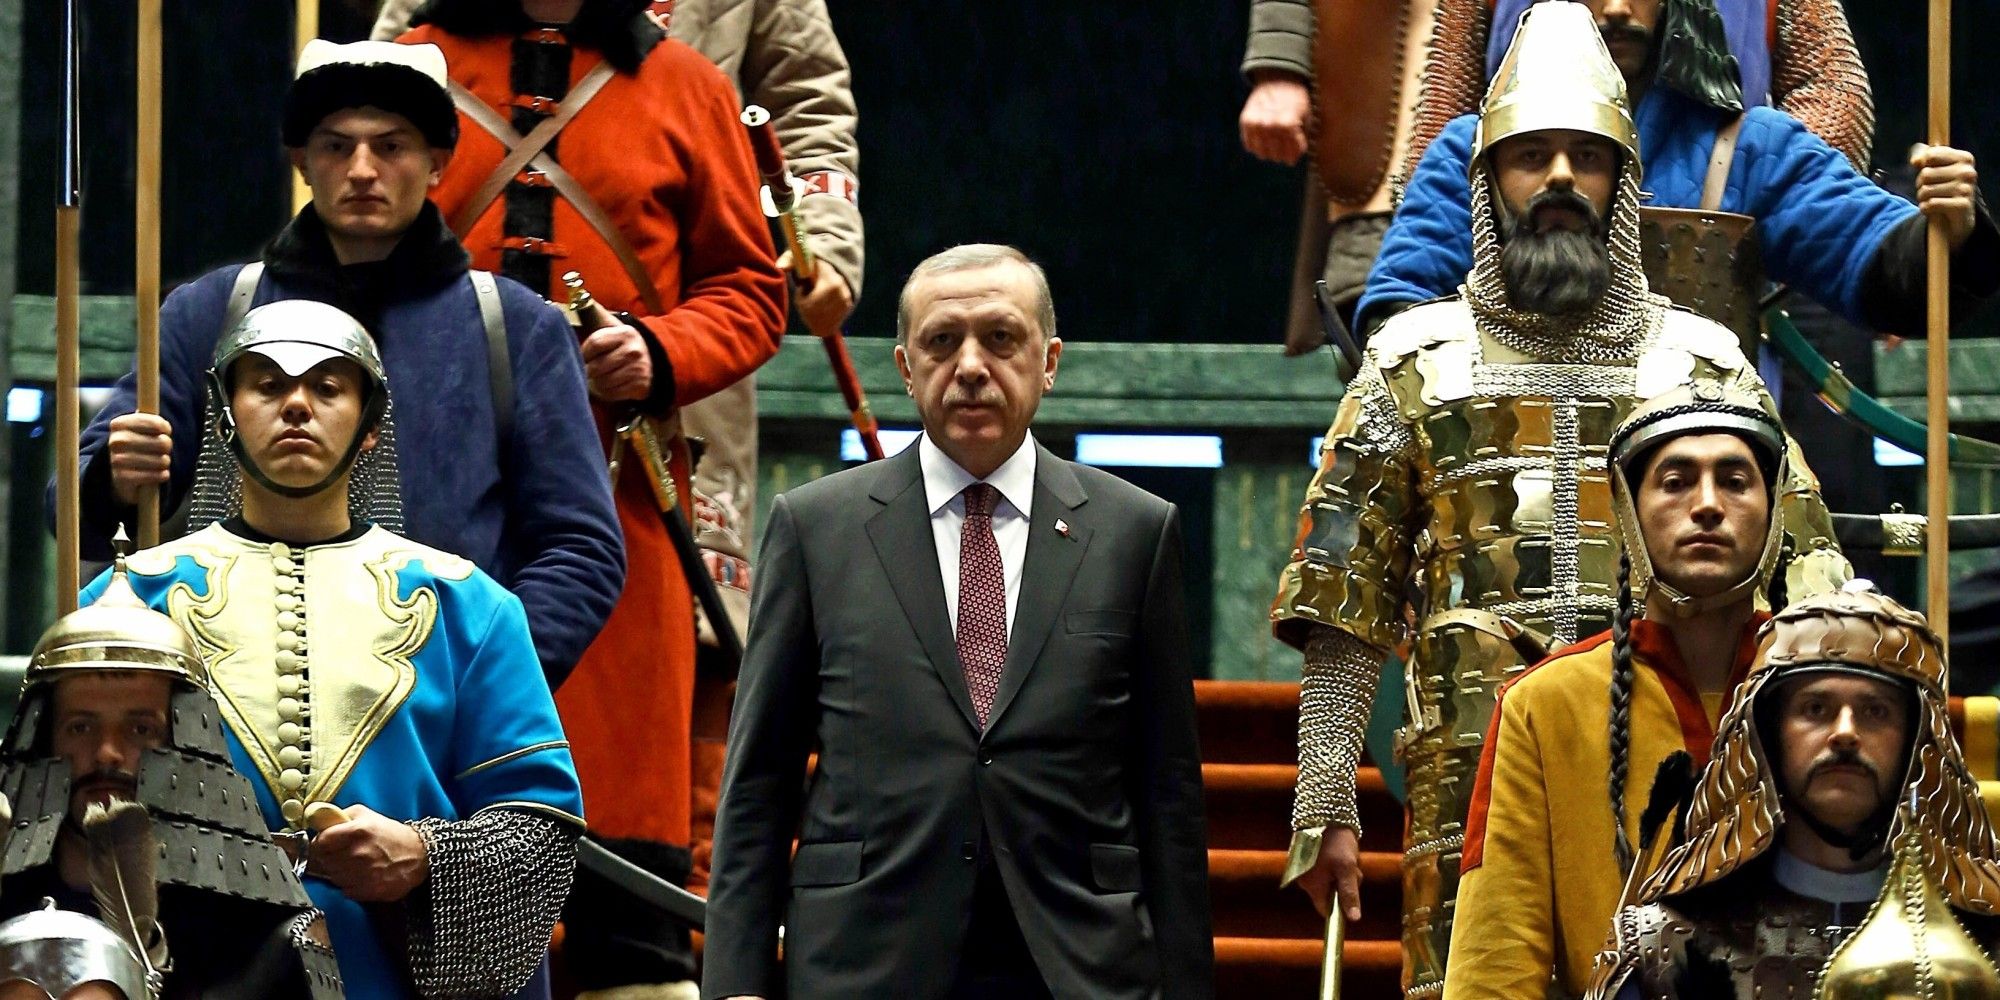 Propagande anti-occidentale, instrumentalisation du passé ottoman… Le régime d’Erdogan veut-il braquer l’opinion turque contre l’Europe ?